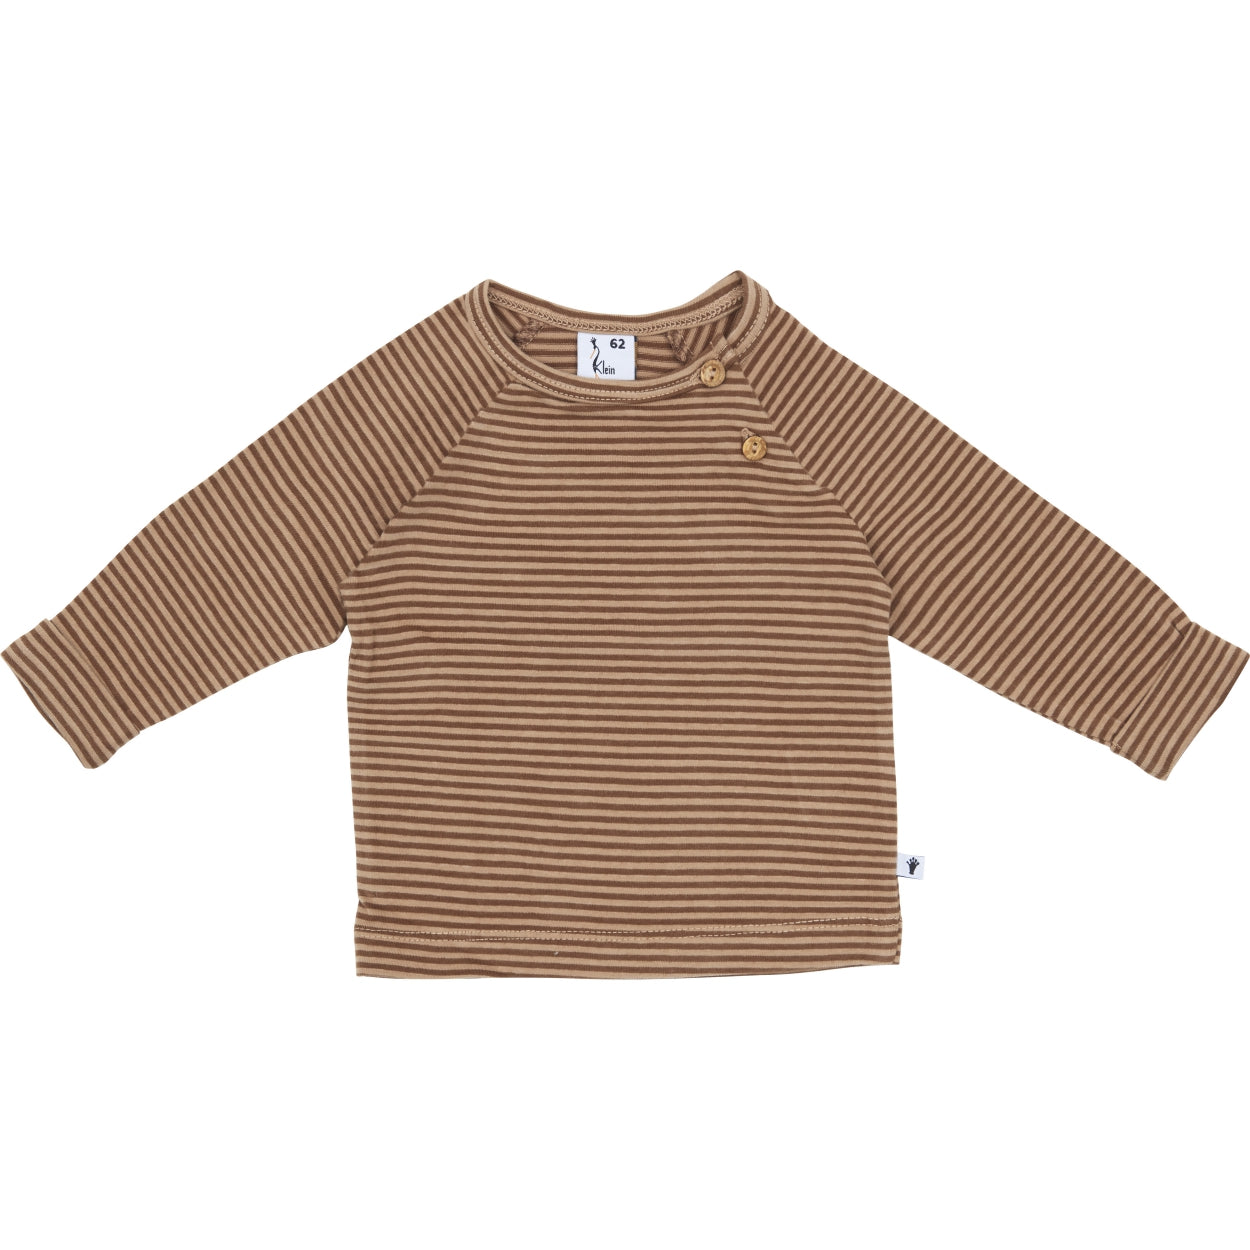 Jongens Shirt Buttons van Klein Baby in de kleur Stripe Burro/Rawhide in maat 74.